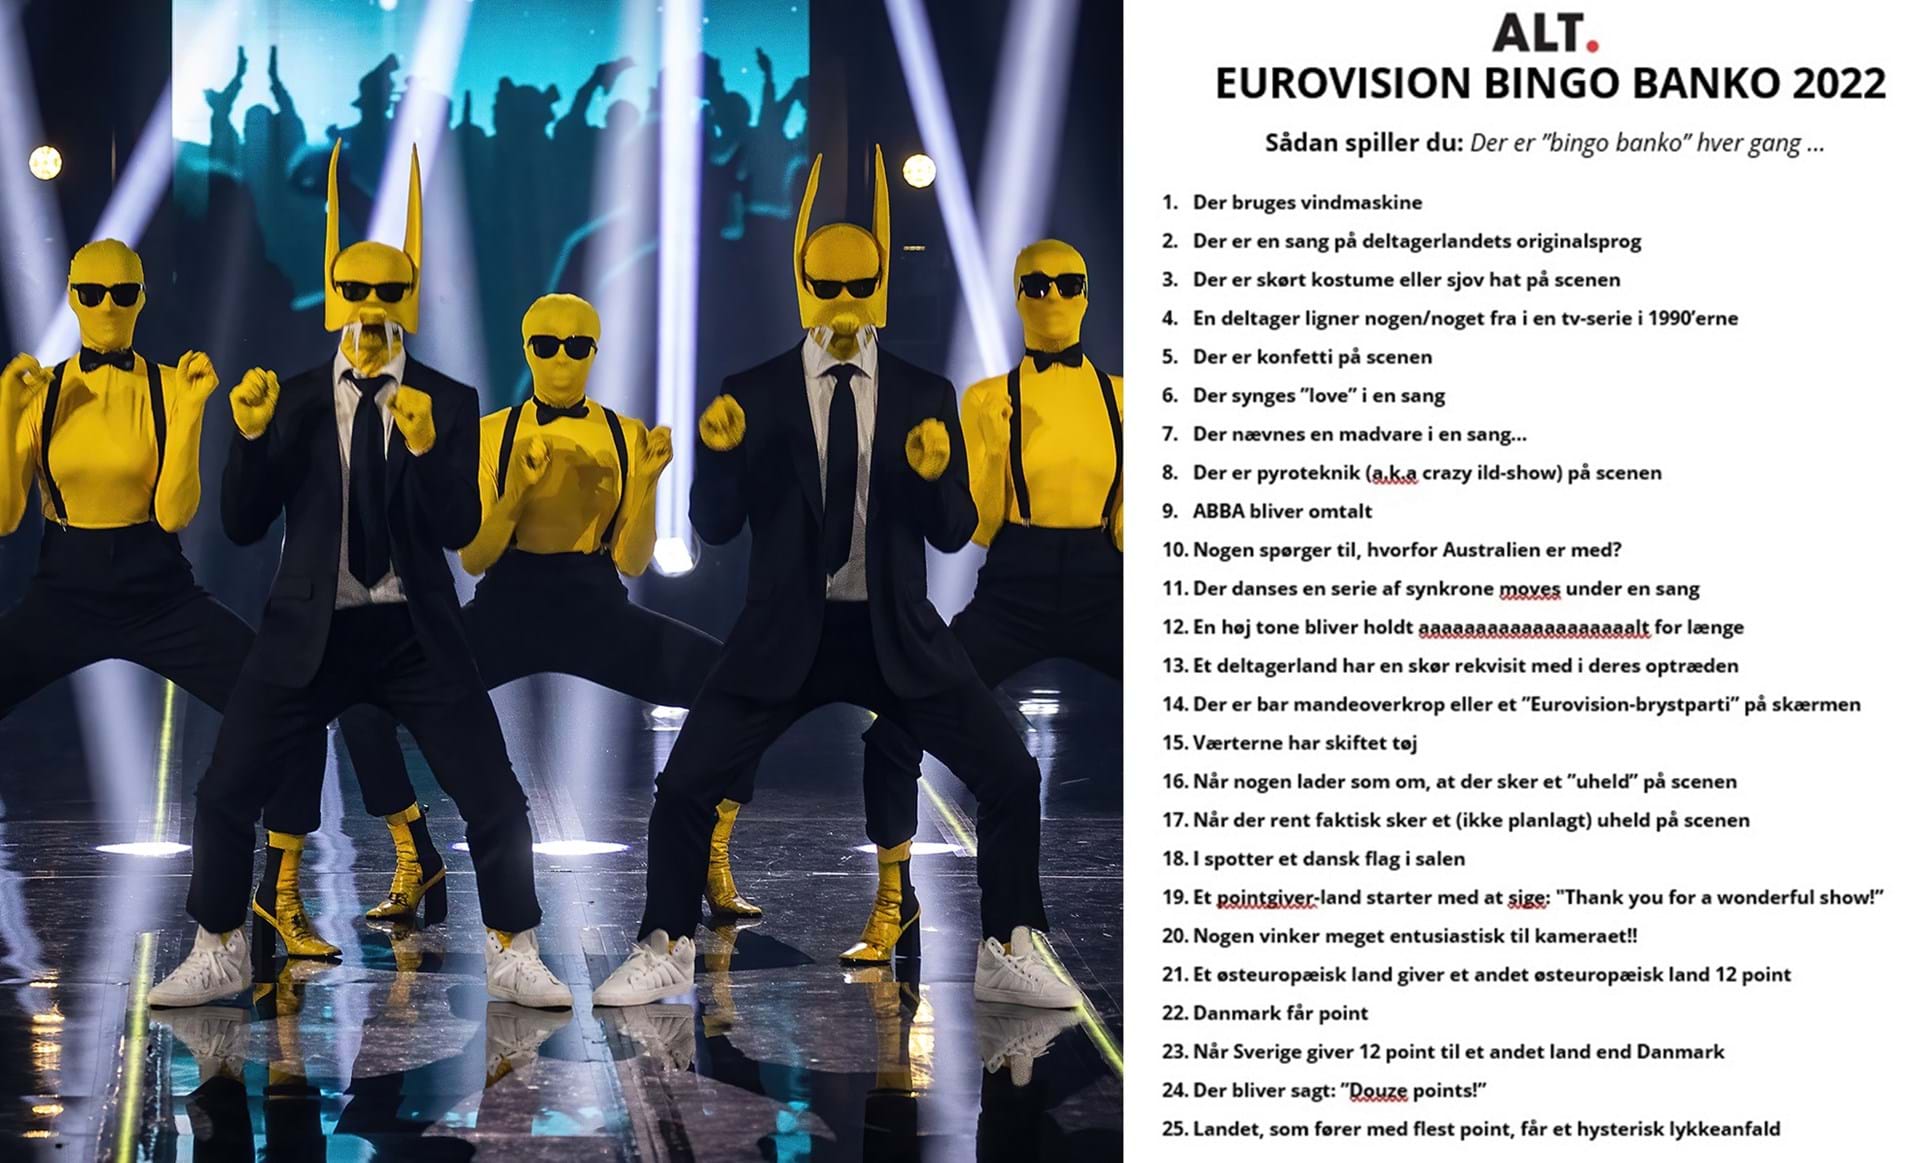 forbandelse radar kandidat Eurovision BANKO 2022: Her er spillepladen og de sjove regler - ALT.dk